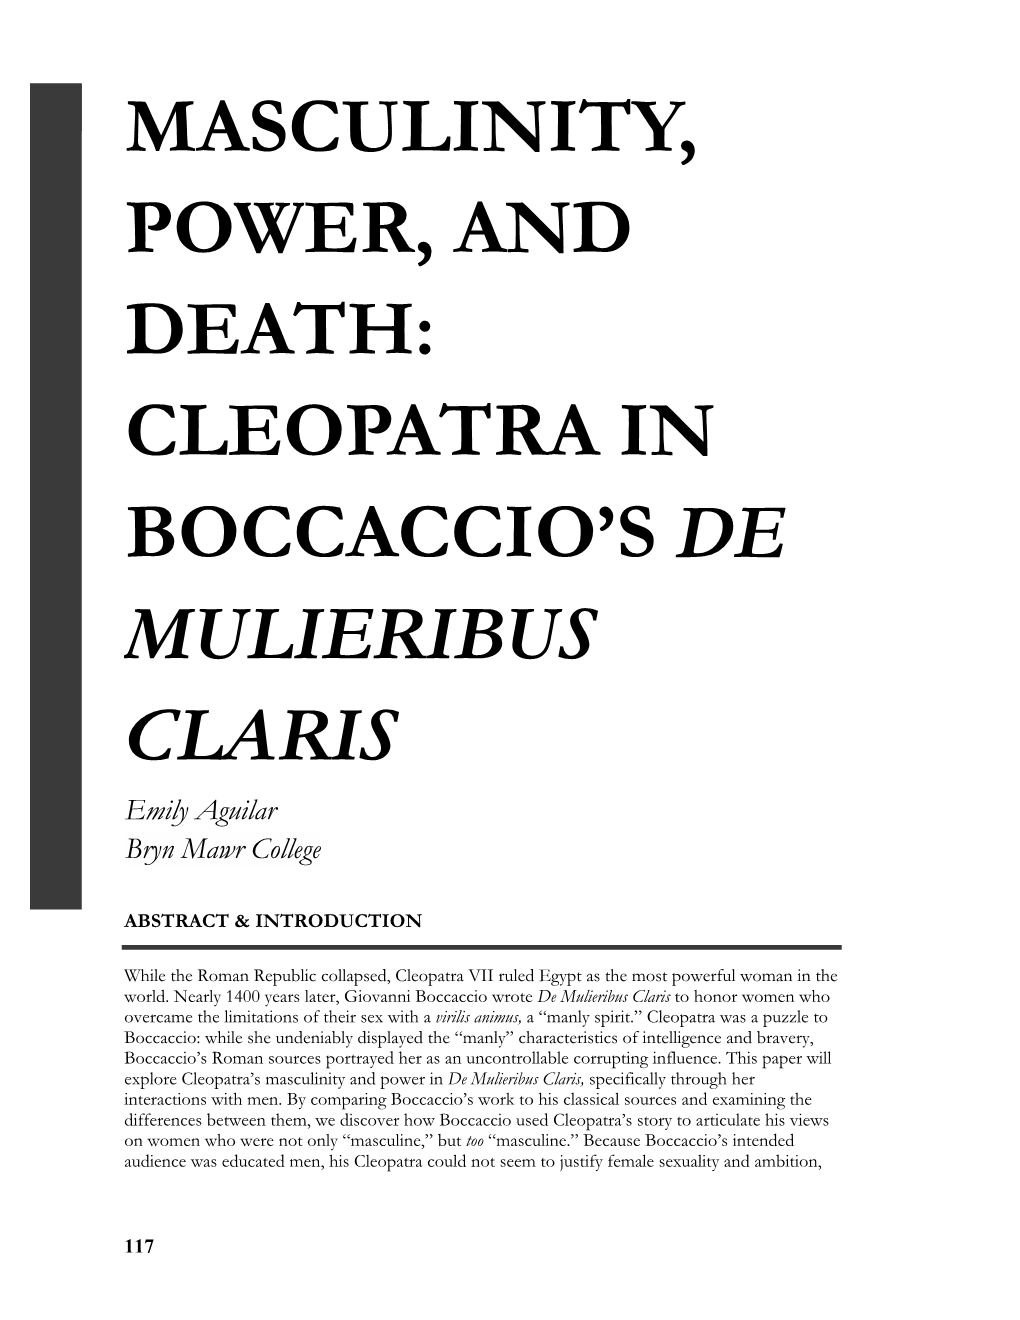 Cleopatra in Boccaccio's De Mulieribus Claris